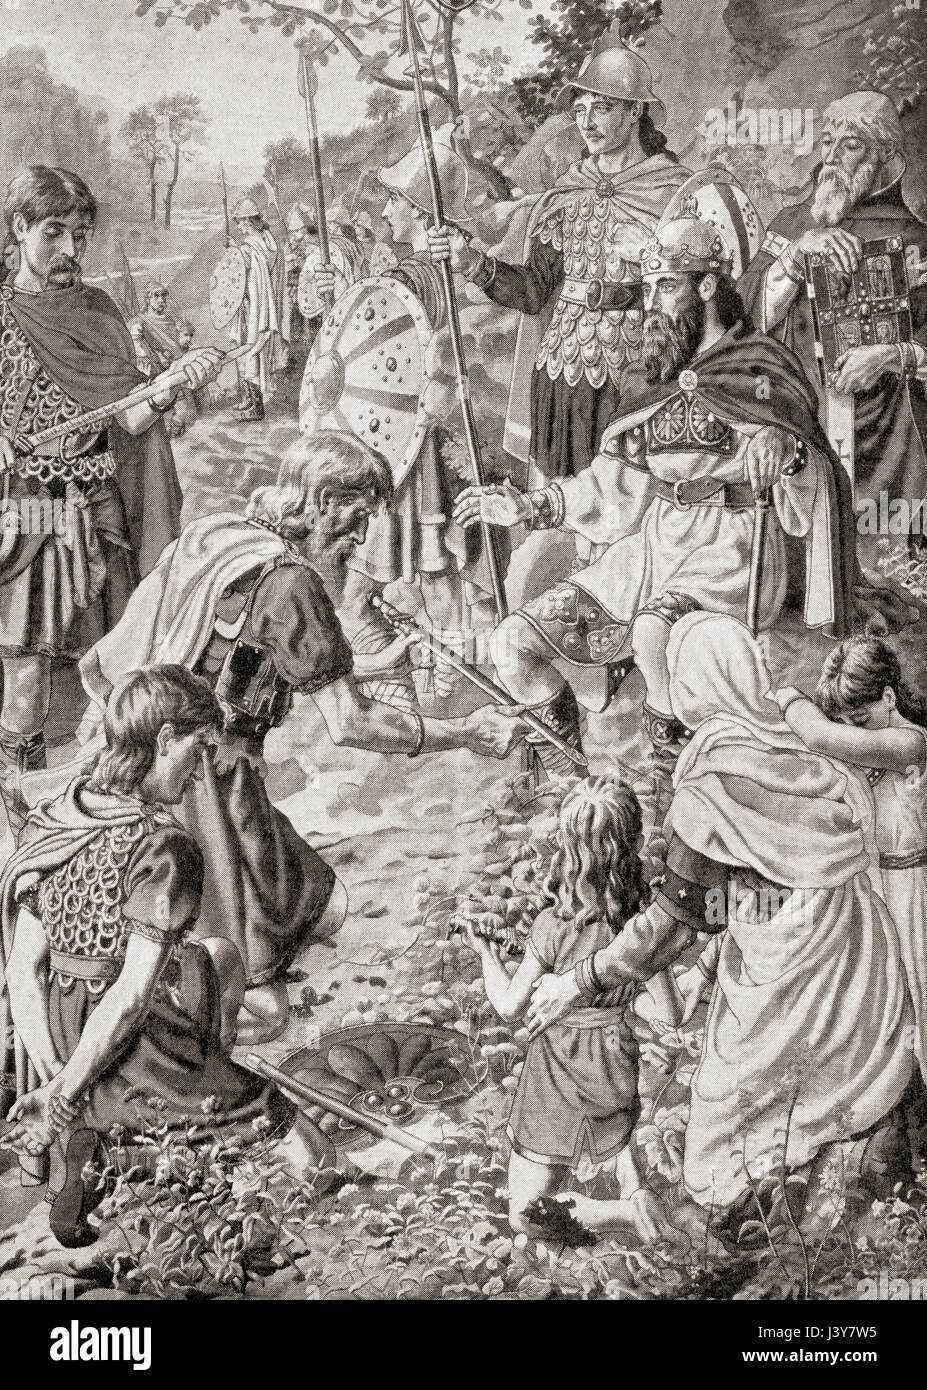 La défaite de Guthrum par Alfred le Grand après la bataille d'Edington en 878. Guthrum ou Guðrum est mort, c. 890. Roi des Vikings danois. Alfred le Grand, 849 - 899. Roi du Wessex de 871 à 899. L'histoire de Hutchinson de l'ONU, publié en 1915. Banque D'Images